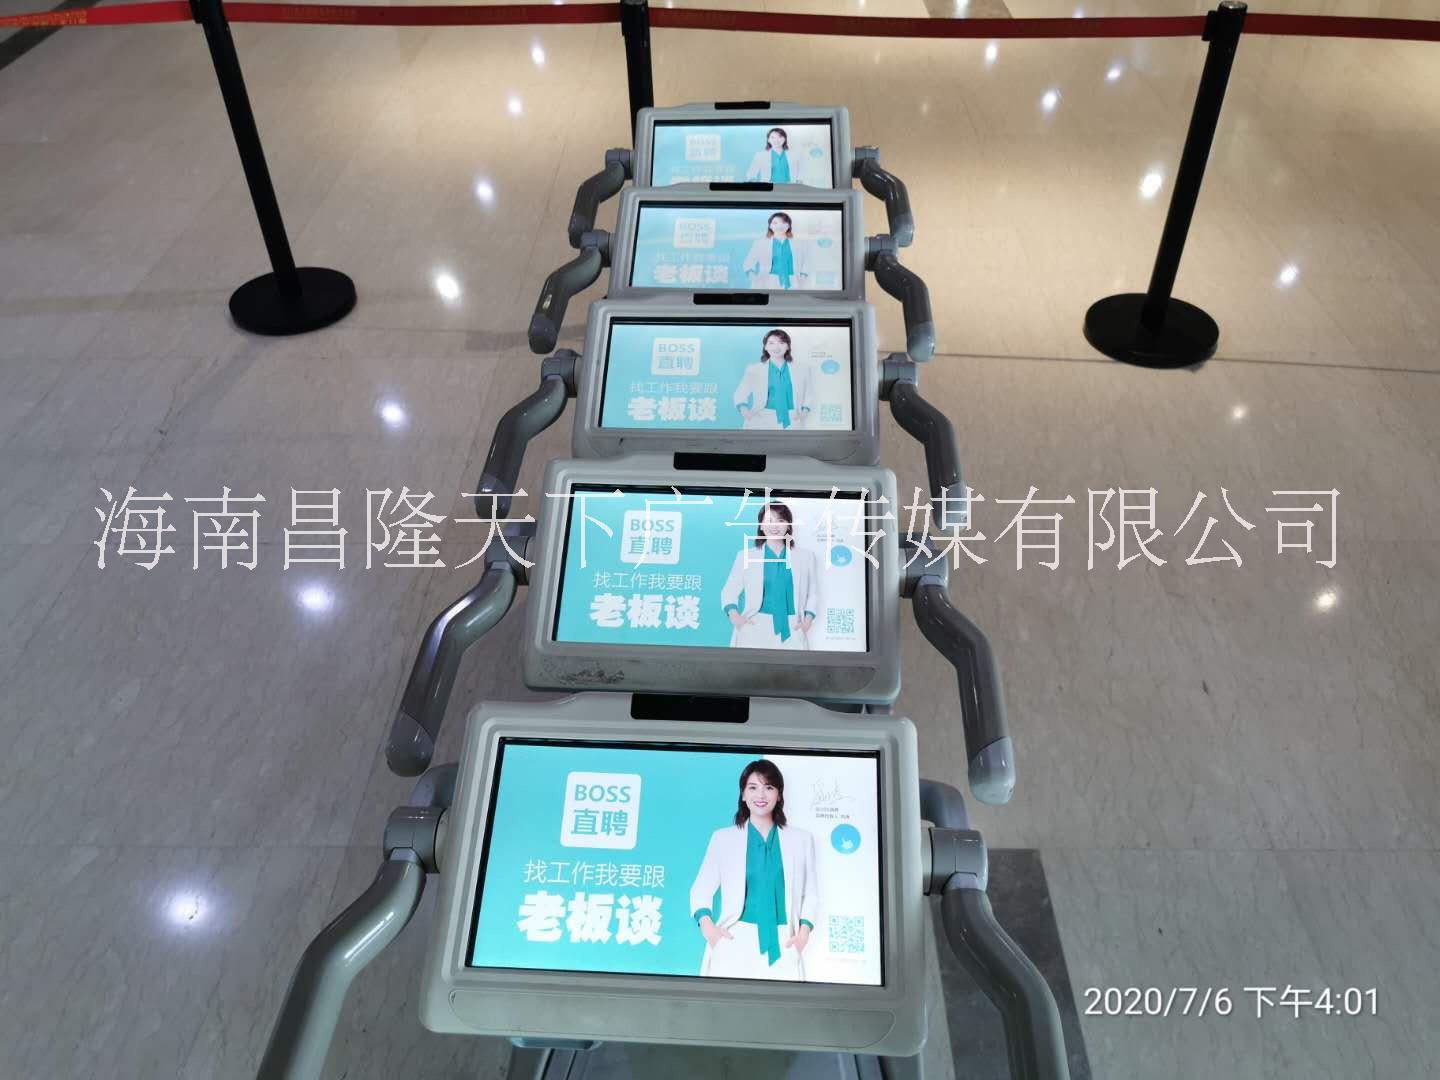 海口三亚机场新型行李手推车广告位图片